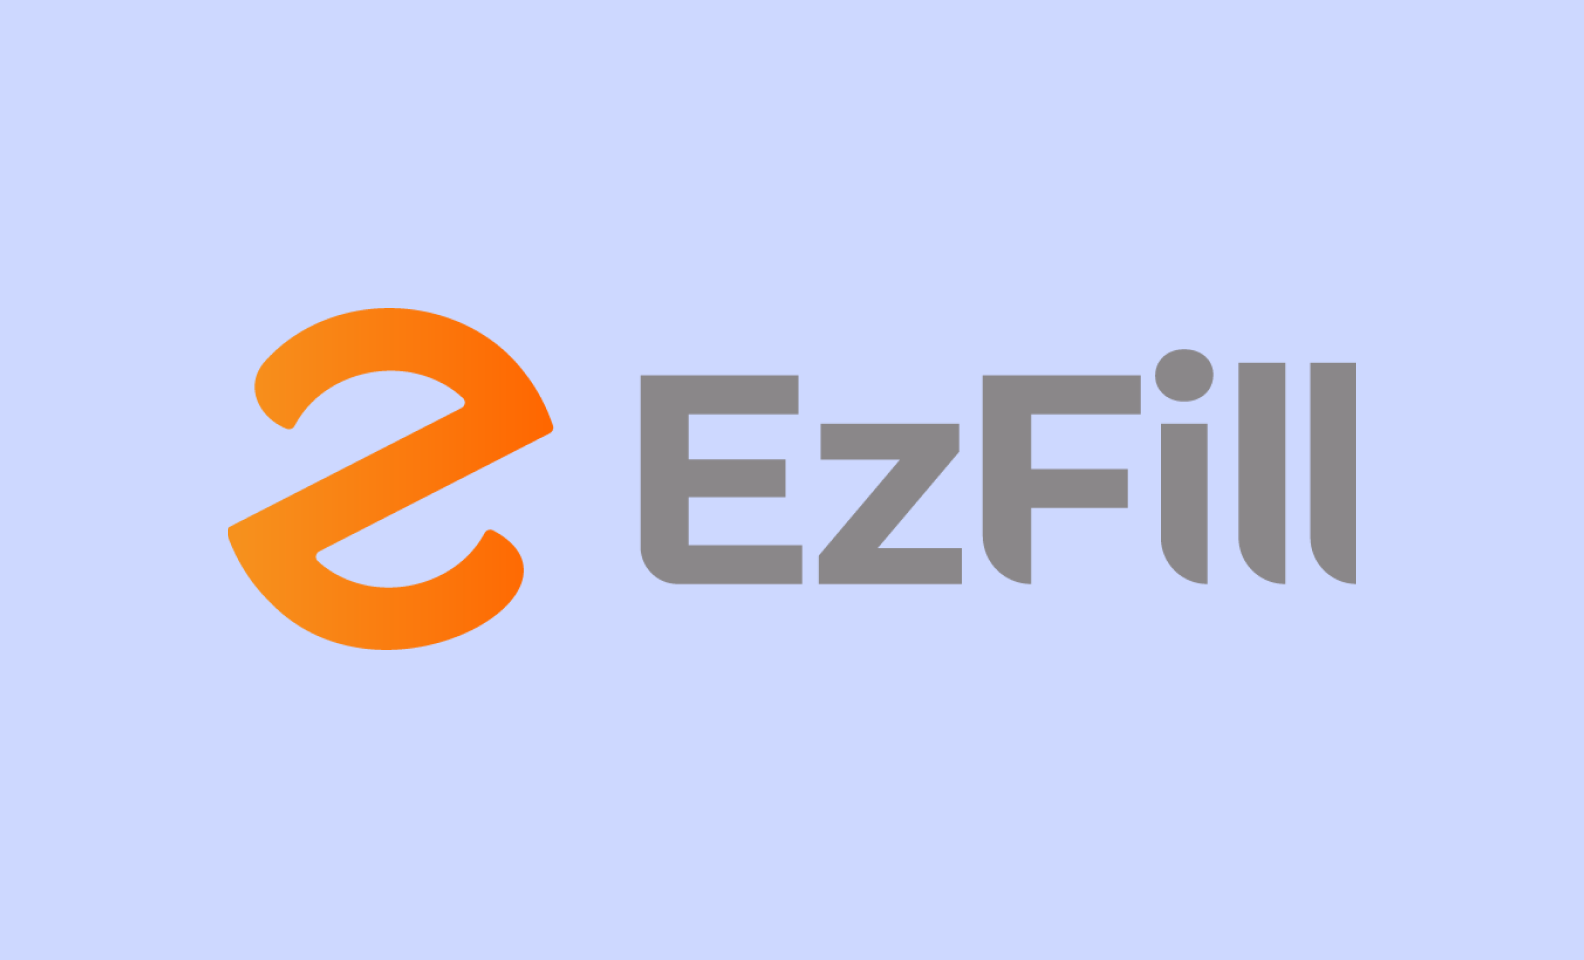 Логотип EZFill, оранжевые буквы «E» и «Z», соединенные вместе, и название бренда жирными серыми буквами.